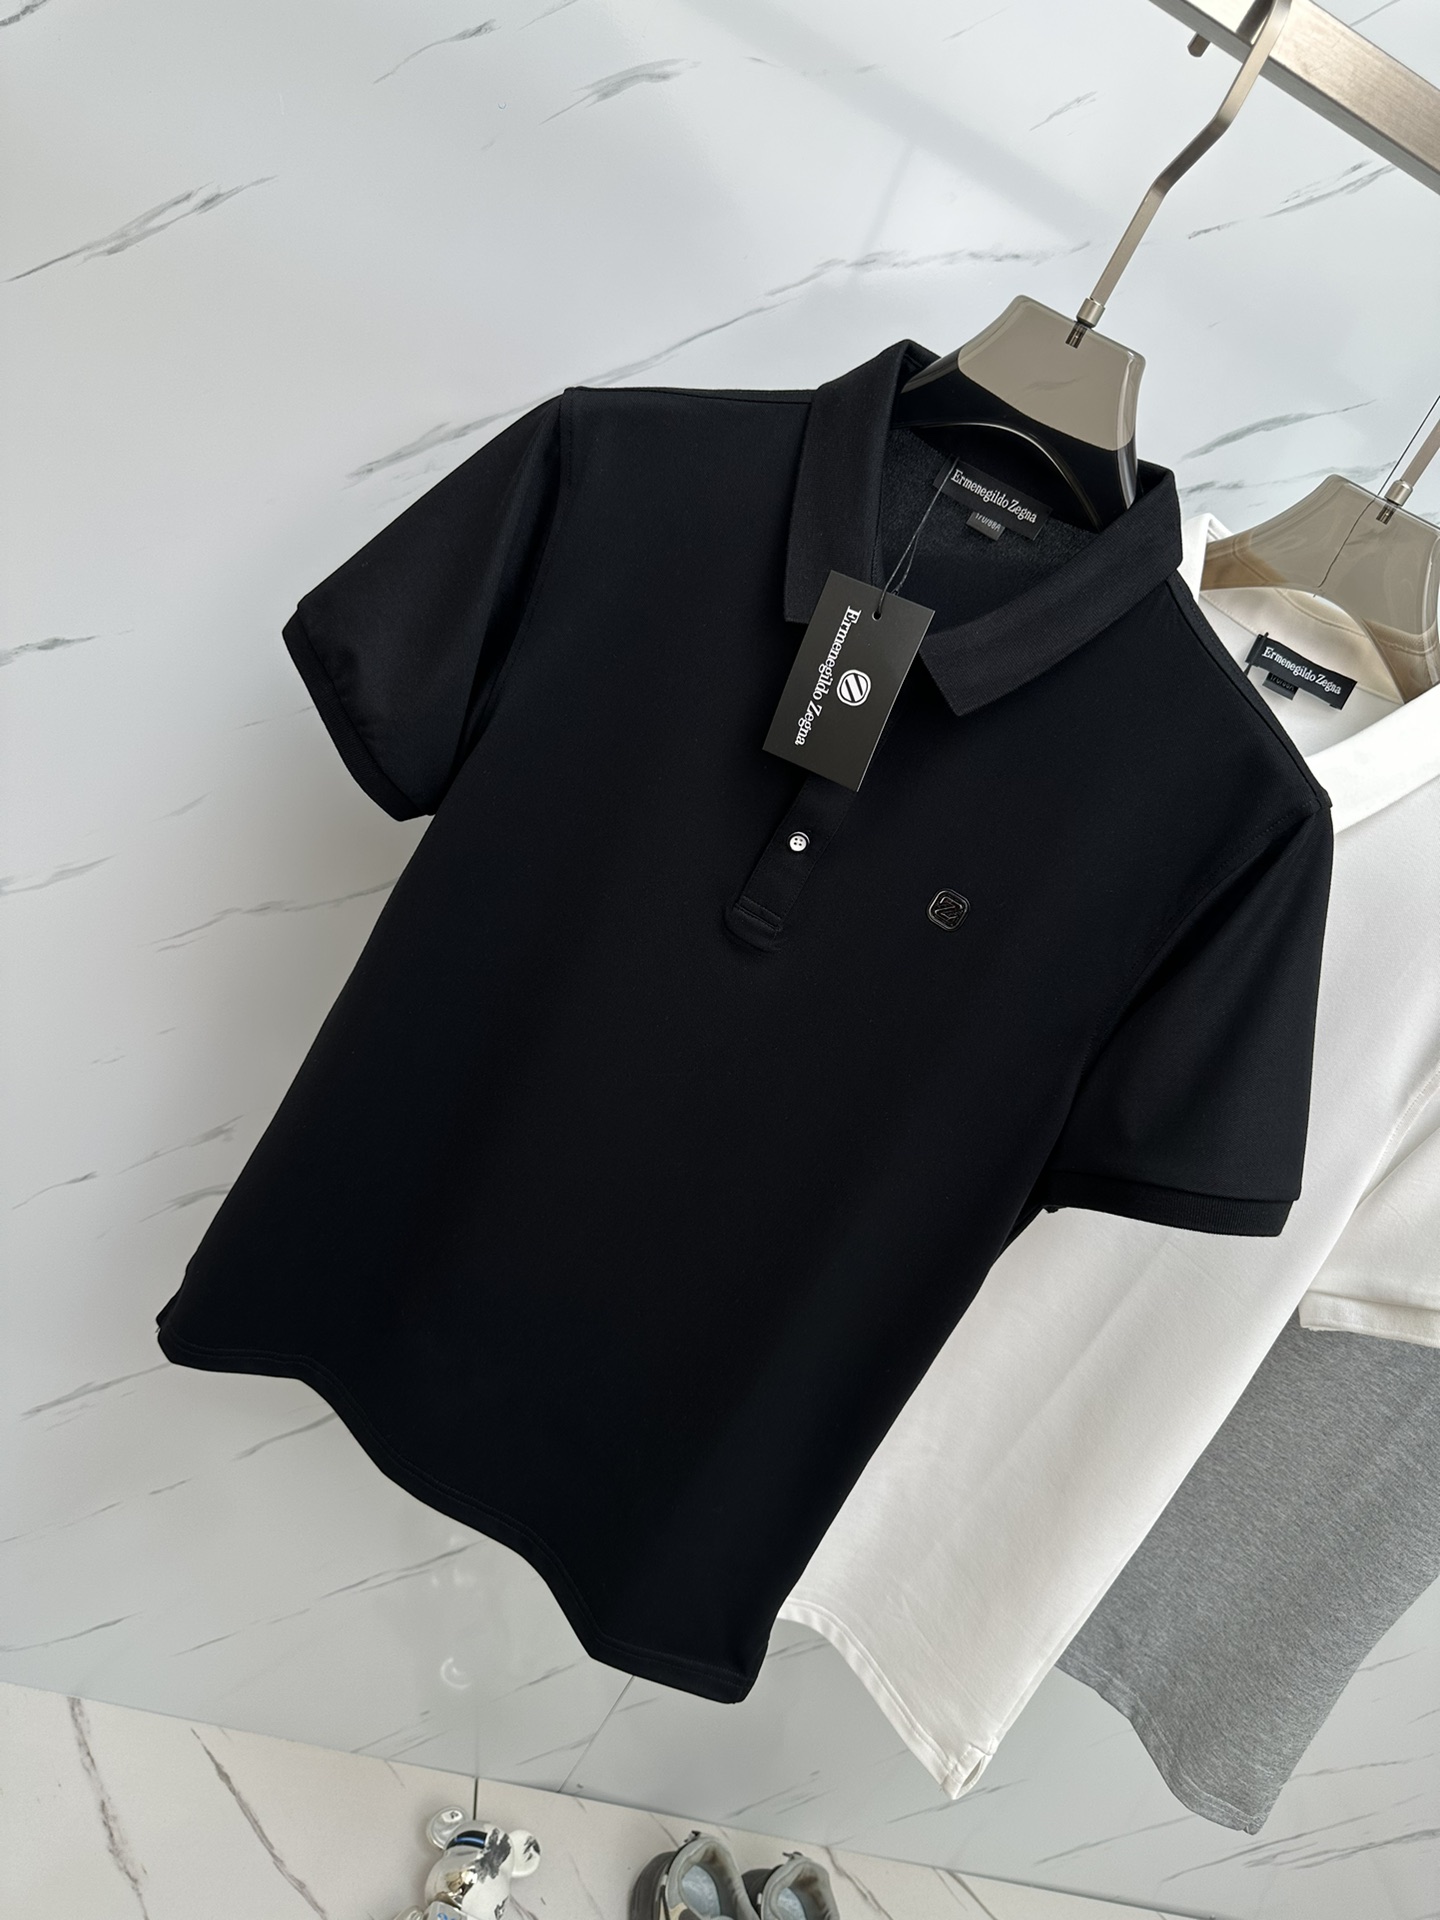 杰尼亚最新最顶级版本Polo衫短袖最顶级的品质.玉蚕丝顶级制作工艺进口面料专柜款独特设计采用进口高端订制